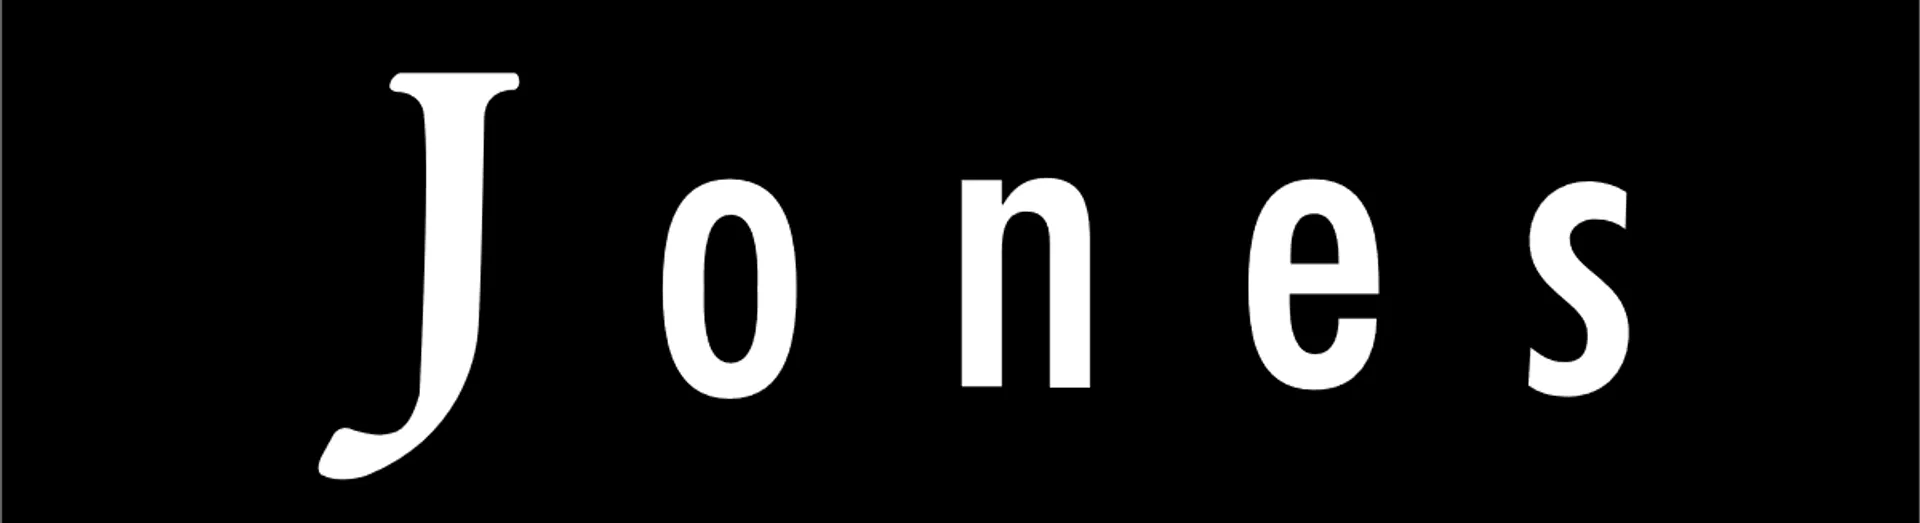 JONES logo die aktuell Flugblatt